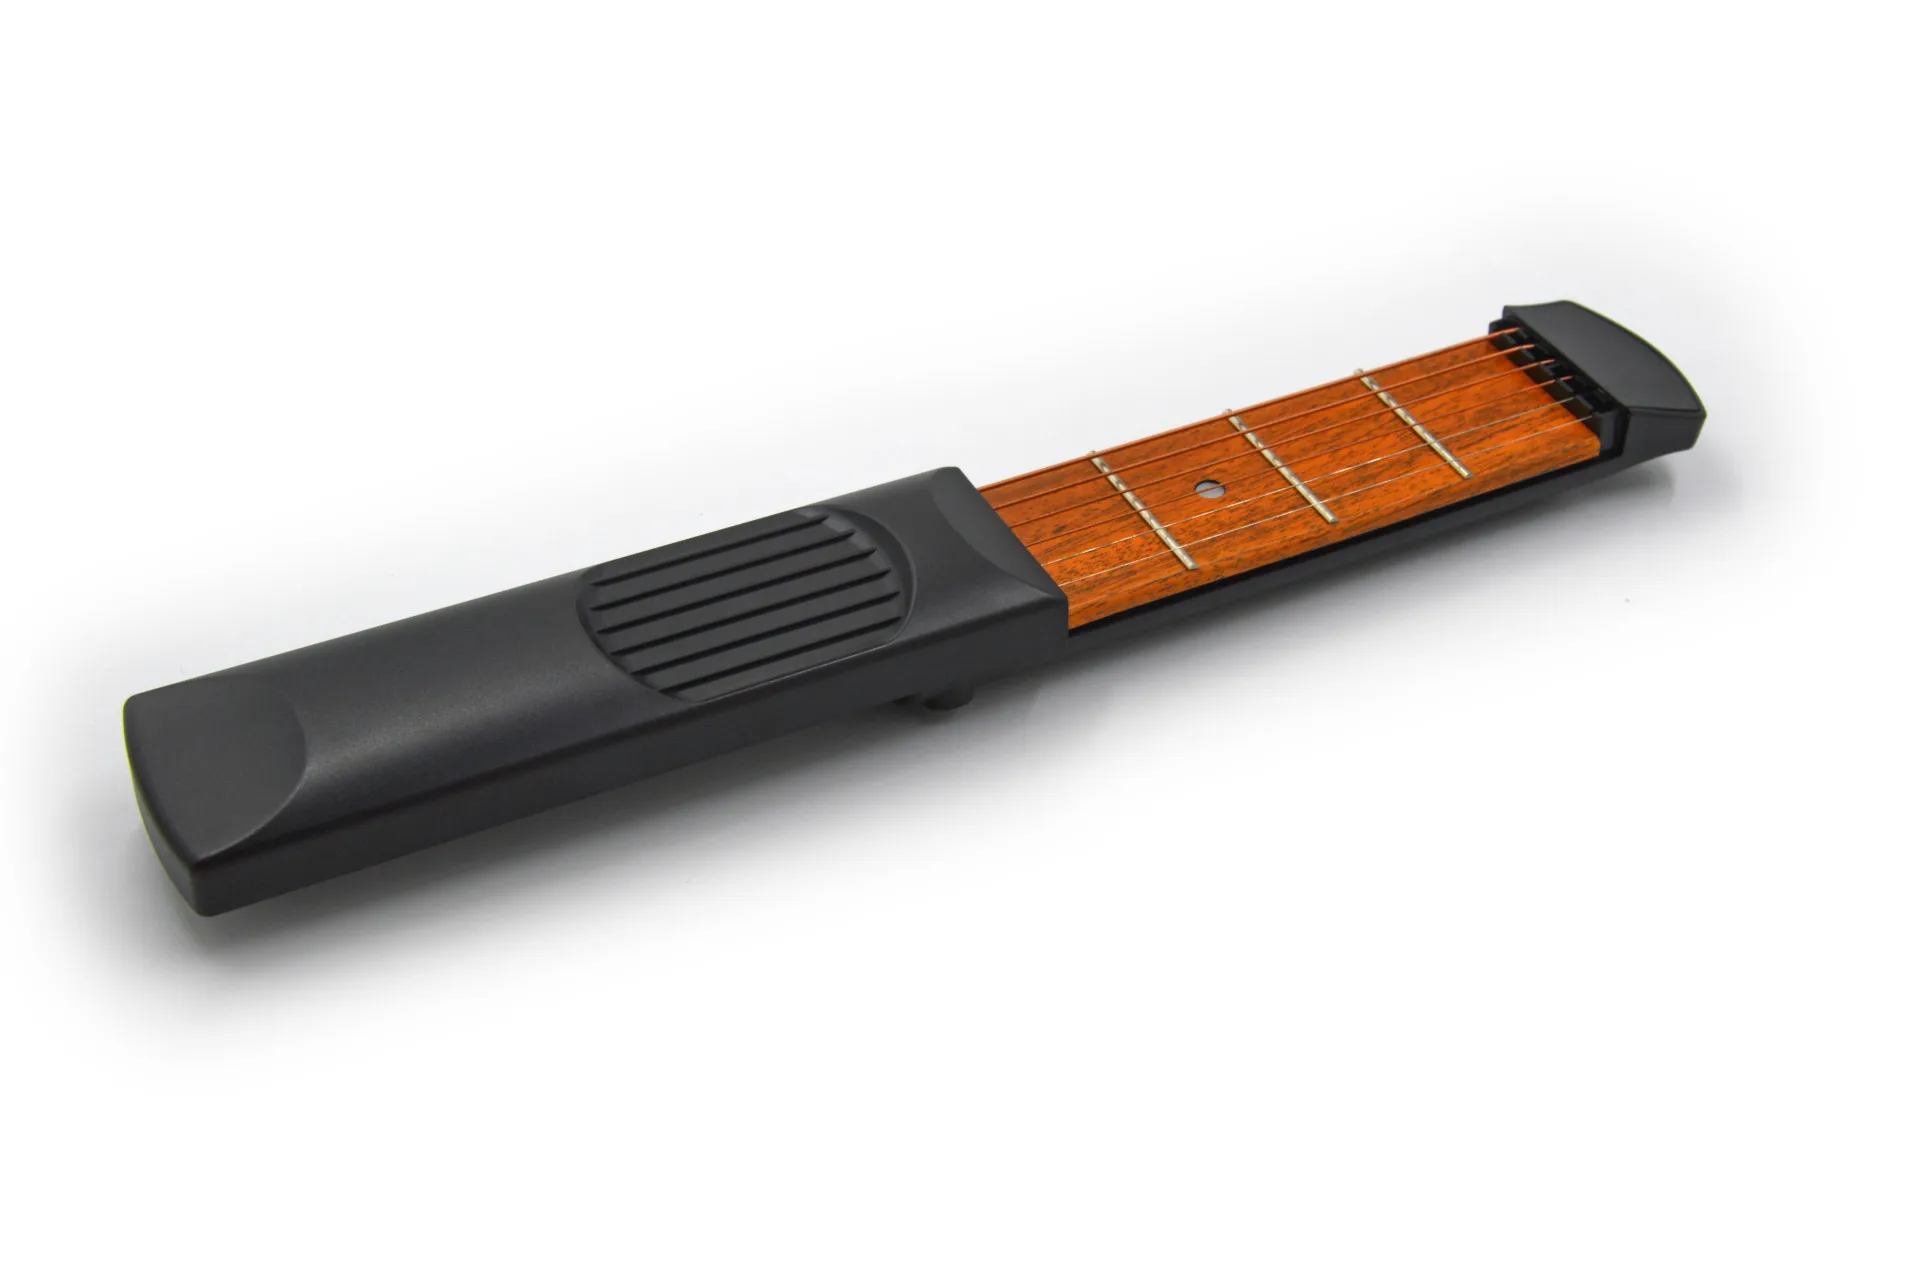 Практичный портативный карман для акустической гитары практический инструмент гаджет 6 струн 4 Лада модель для начинающих гитарные аксессуары GYH